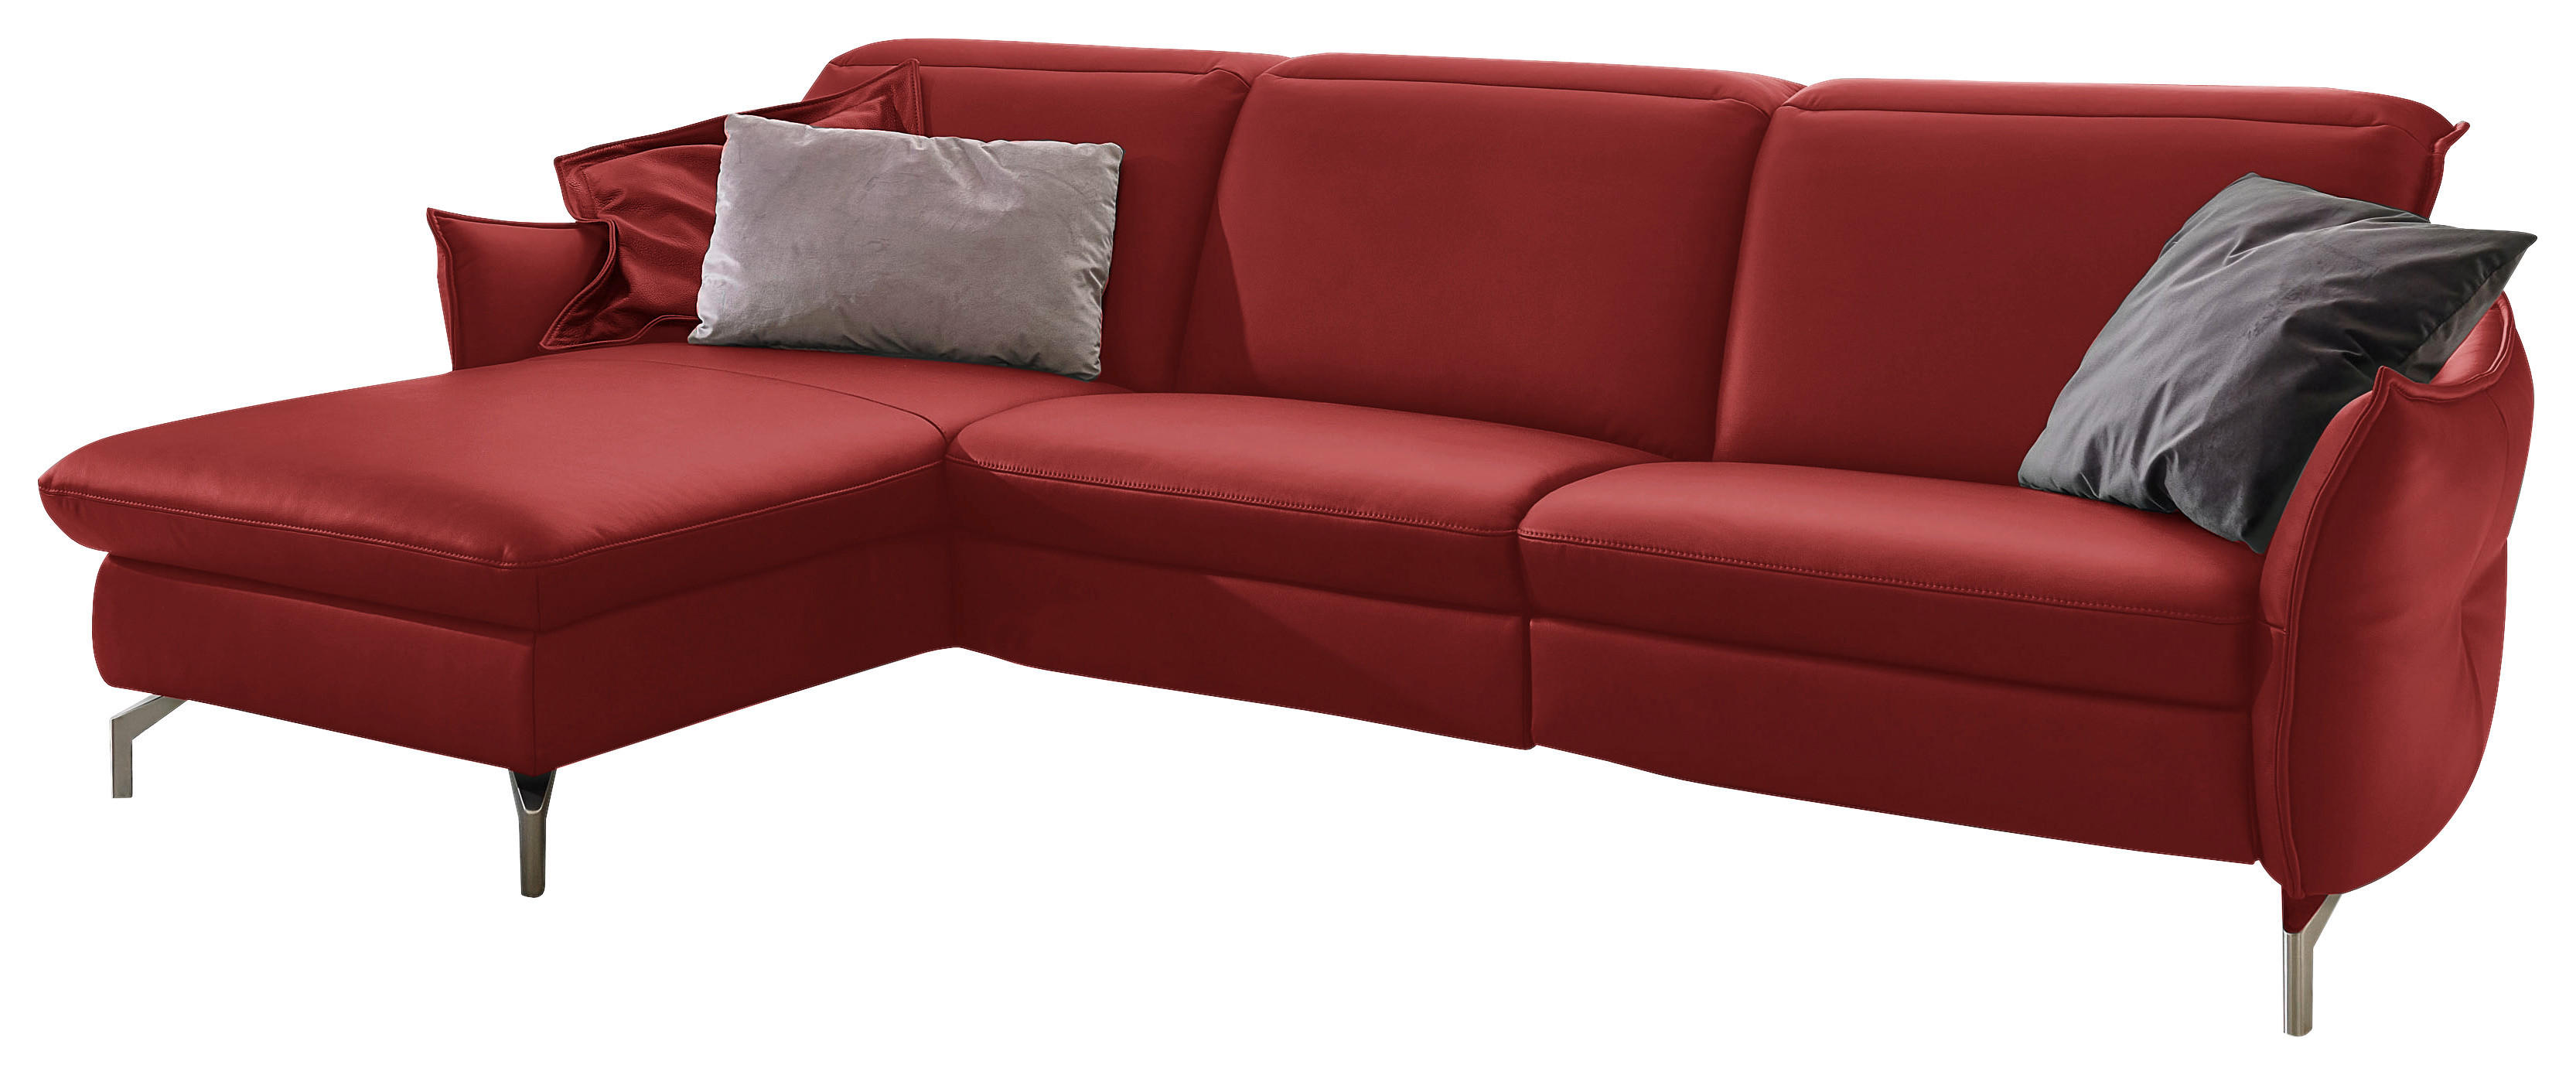 SOFFA i läder röd  - röd/nickelfärgad, Modern, metall/läder (179/233cm) - Livetastic